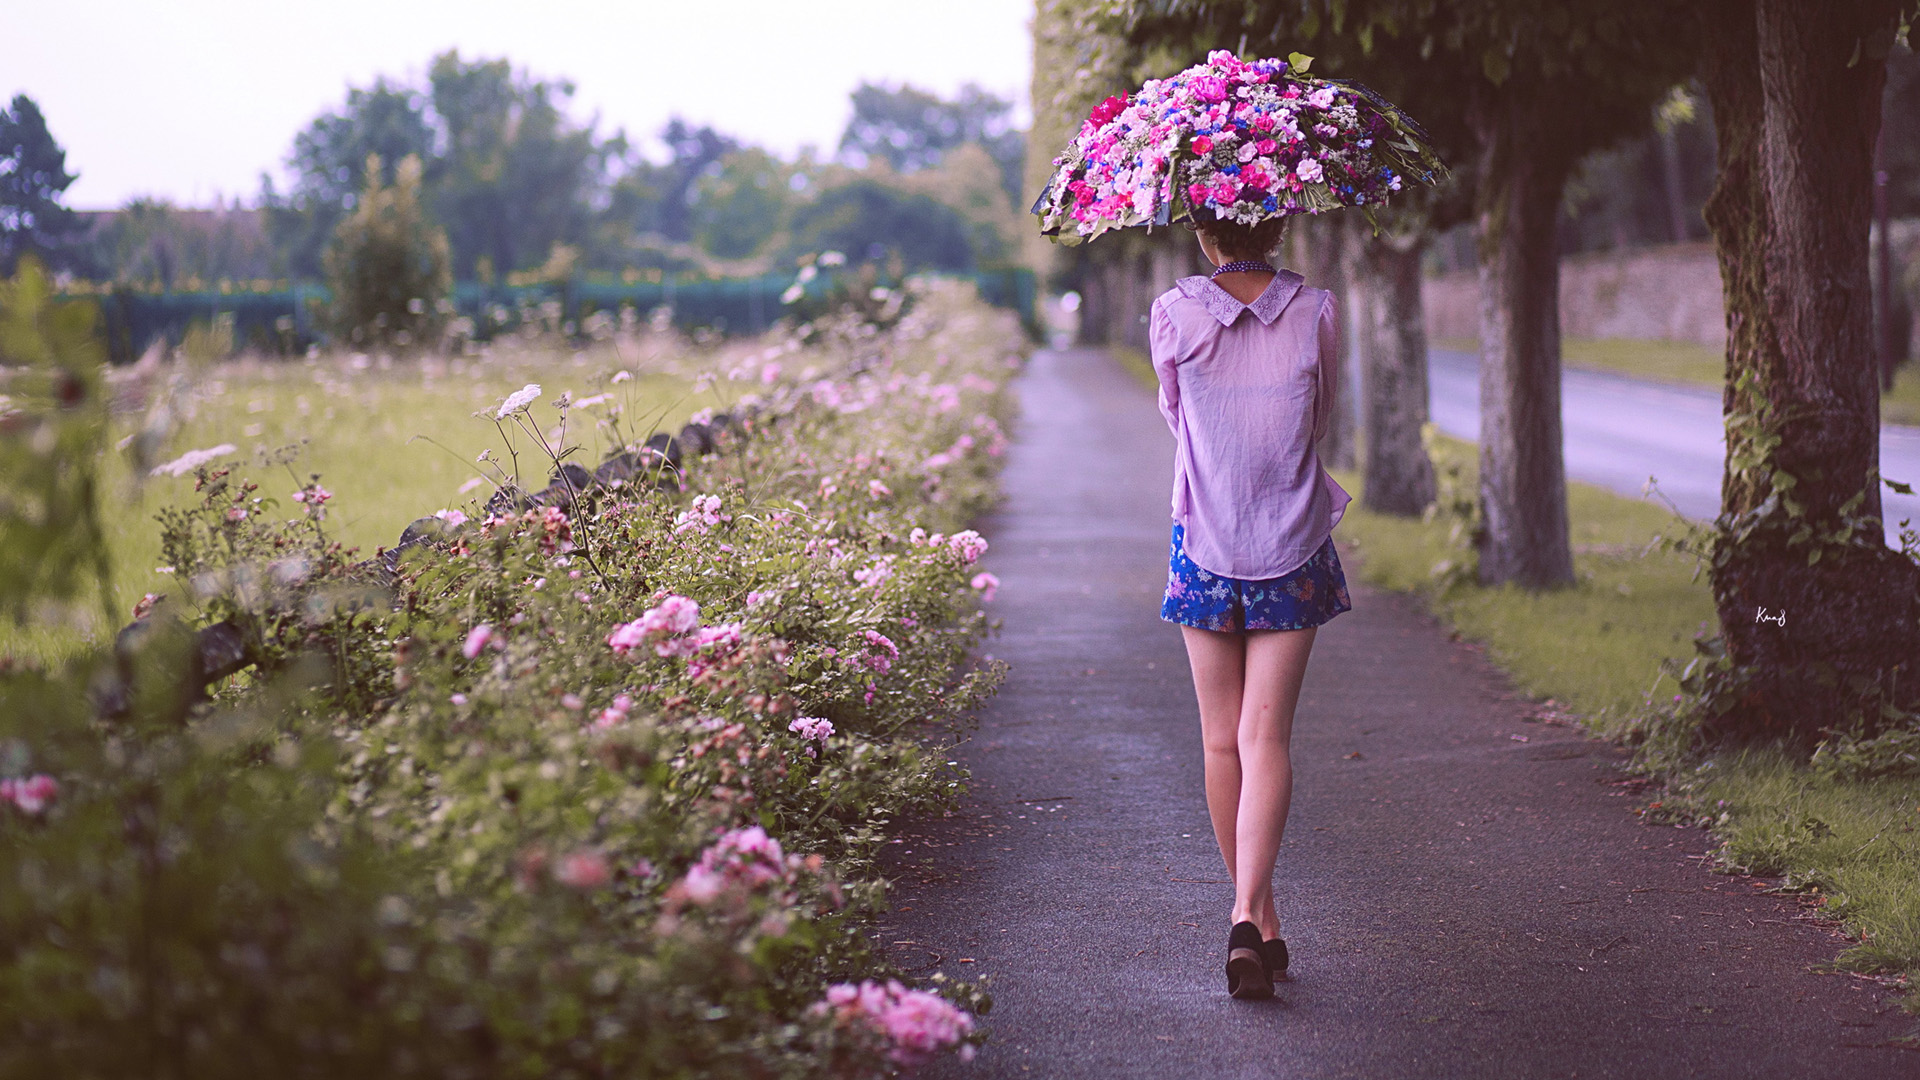 树木,街道,女孩背影,鲜花,伞,唯美桌面高清壁纸